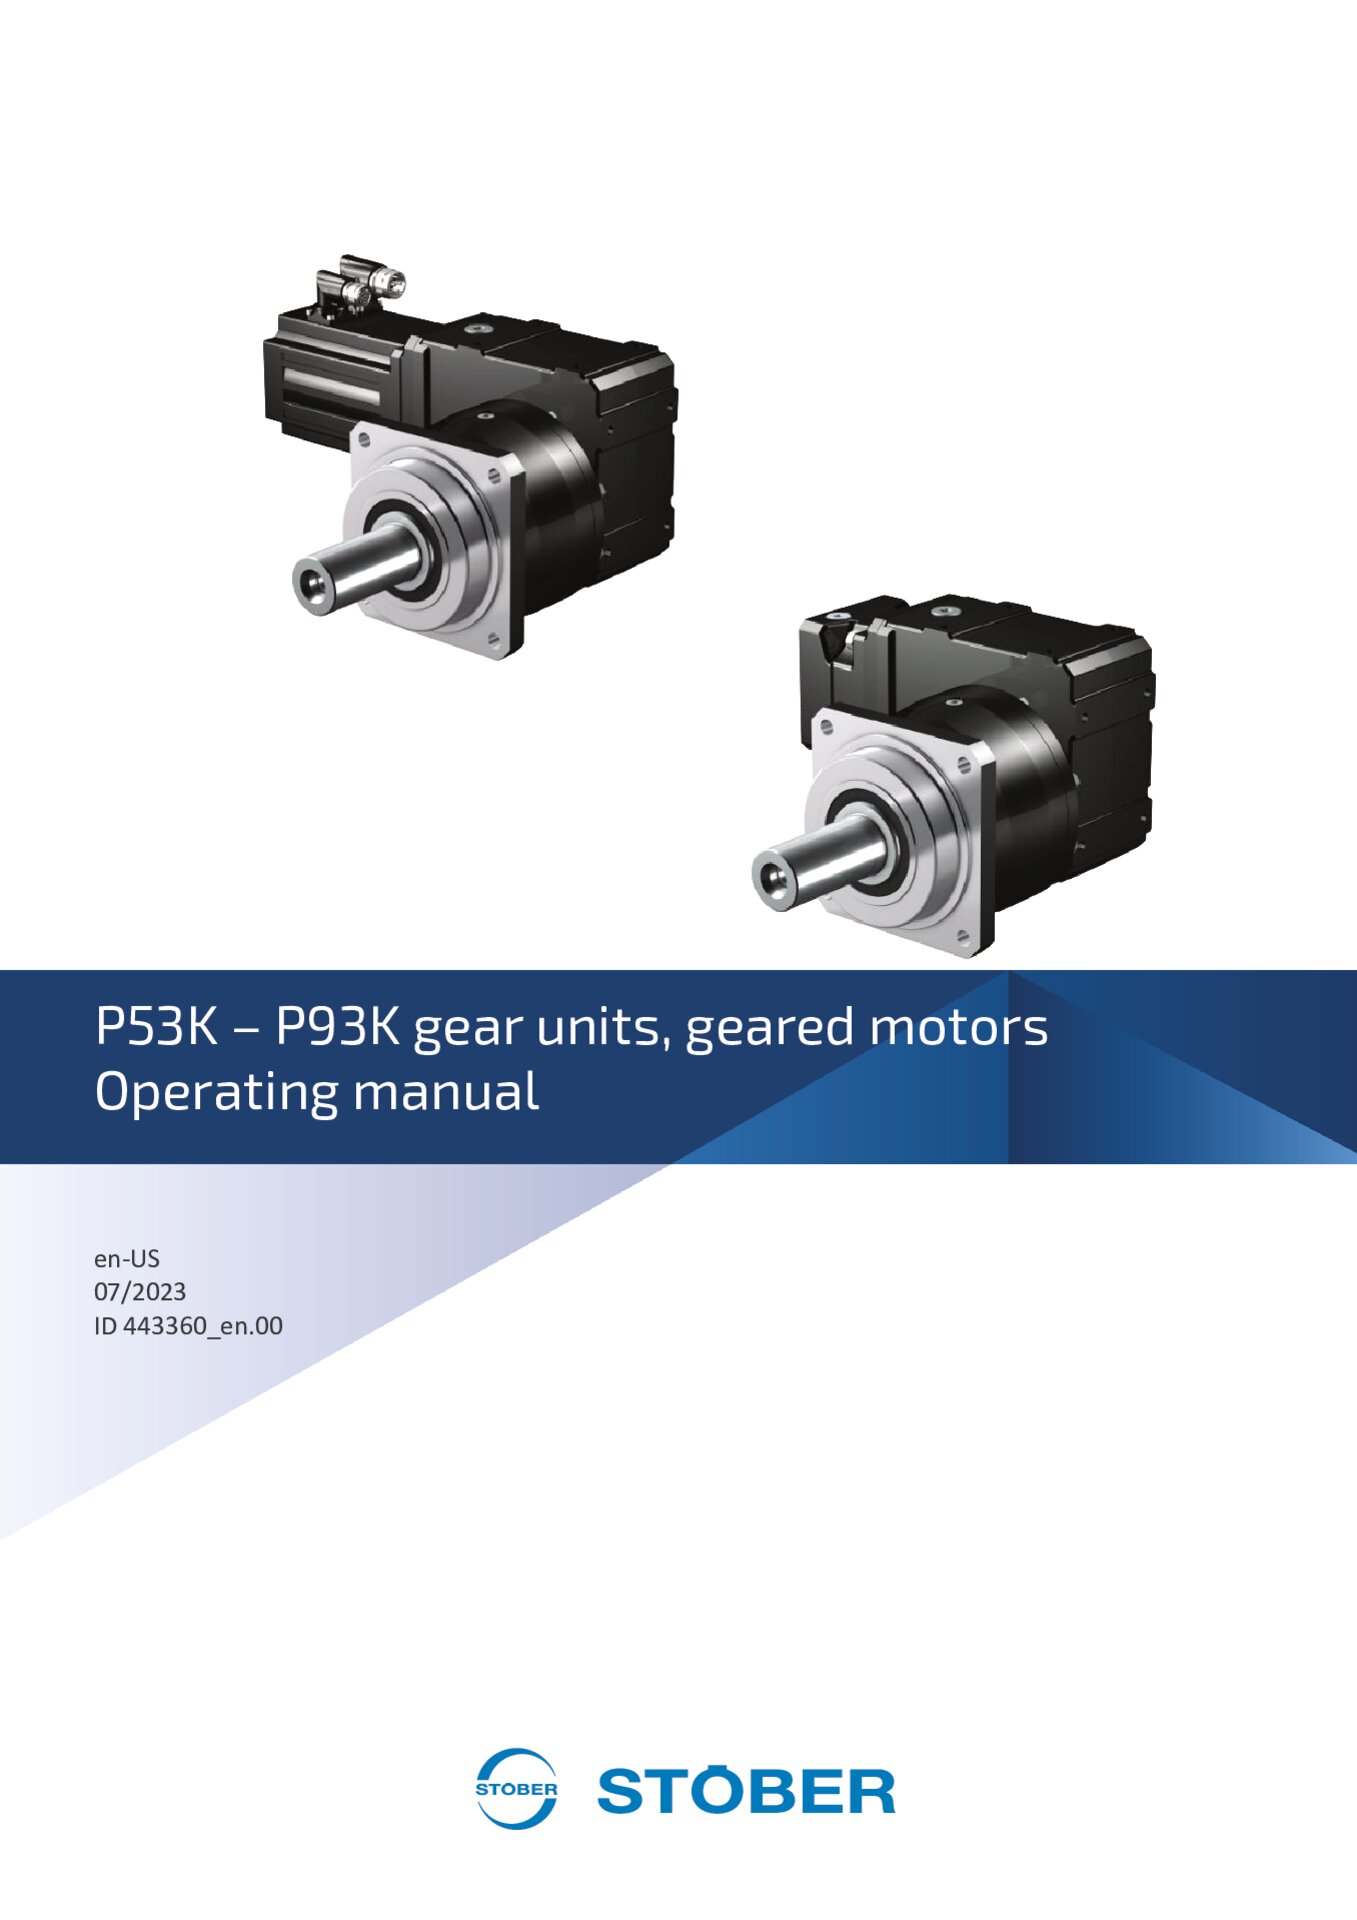 Operating manual P53K - P93K gear units and geared motors